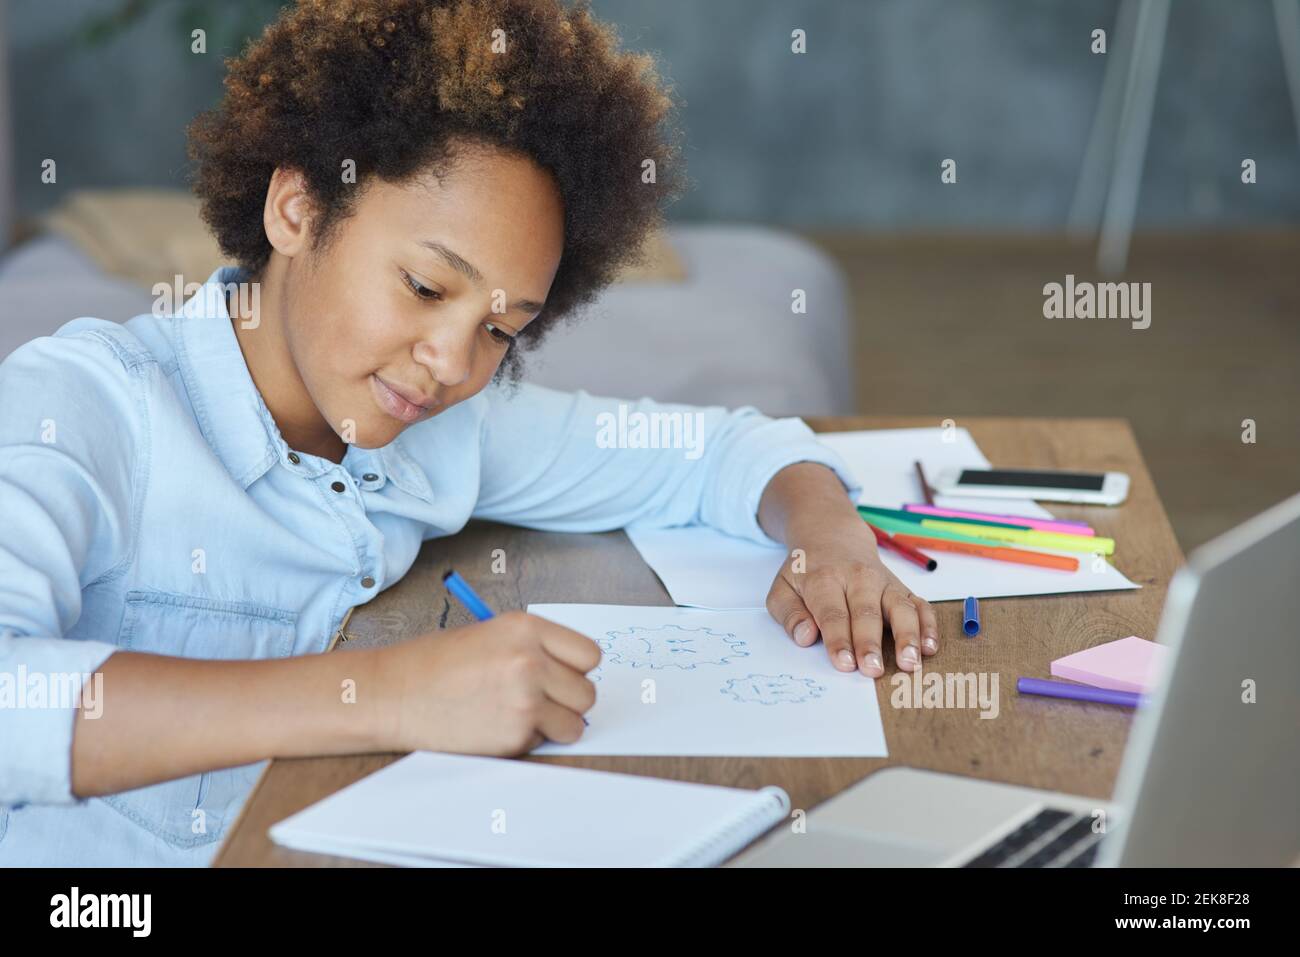 Carrera mixta adolescente escolar mirando enfocado mientras se dibuja en papel con marcadores de colores, pasando tiempo en casa durante la cuarentena Foto de stock